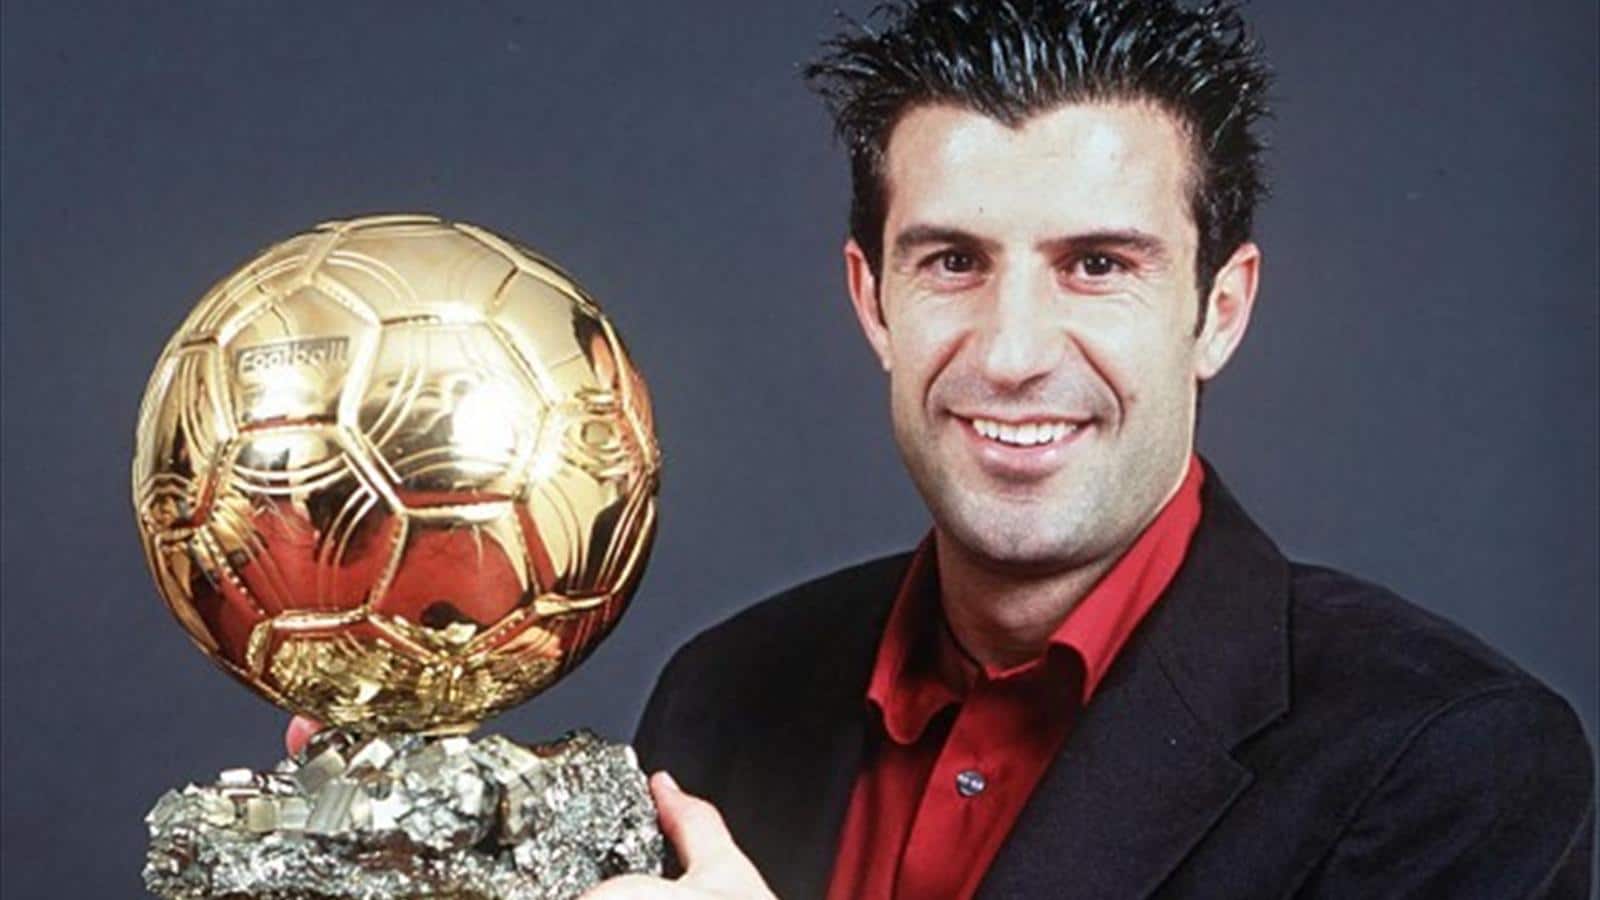 Luis Figo ballon d'or 2000